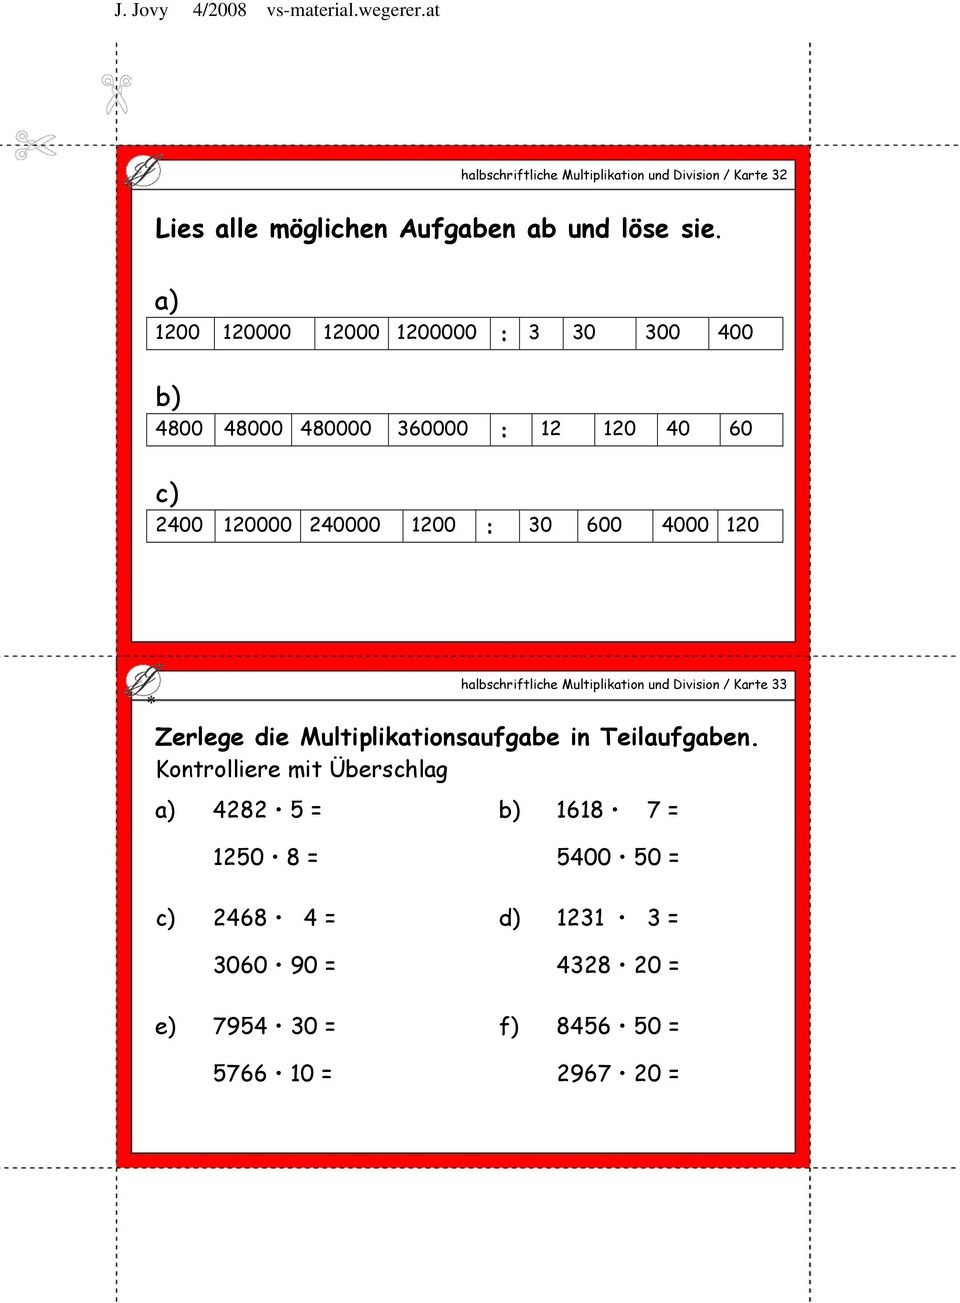 4000 120 halbschriftliche Multiplikation und Division / Karte 33 Zerlege die Multiplikationsaufgabe in Teilaufgaben.